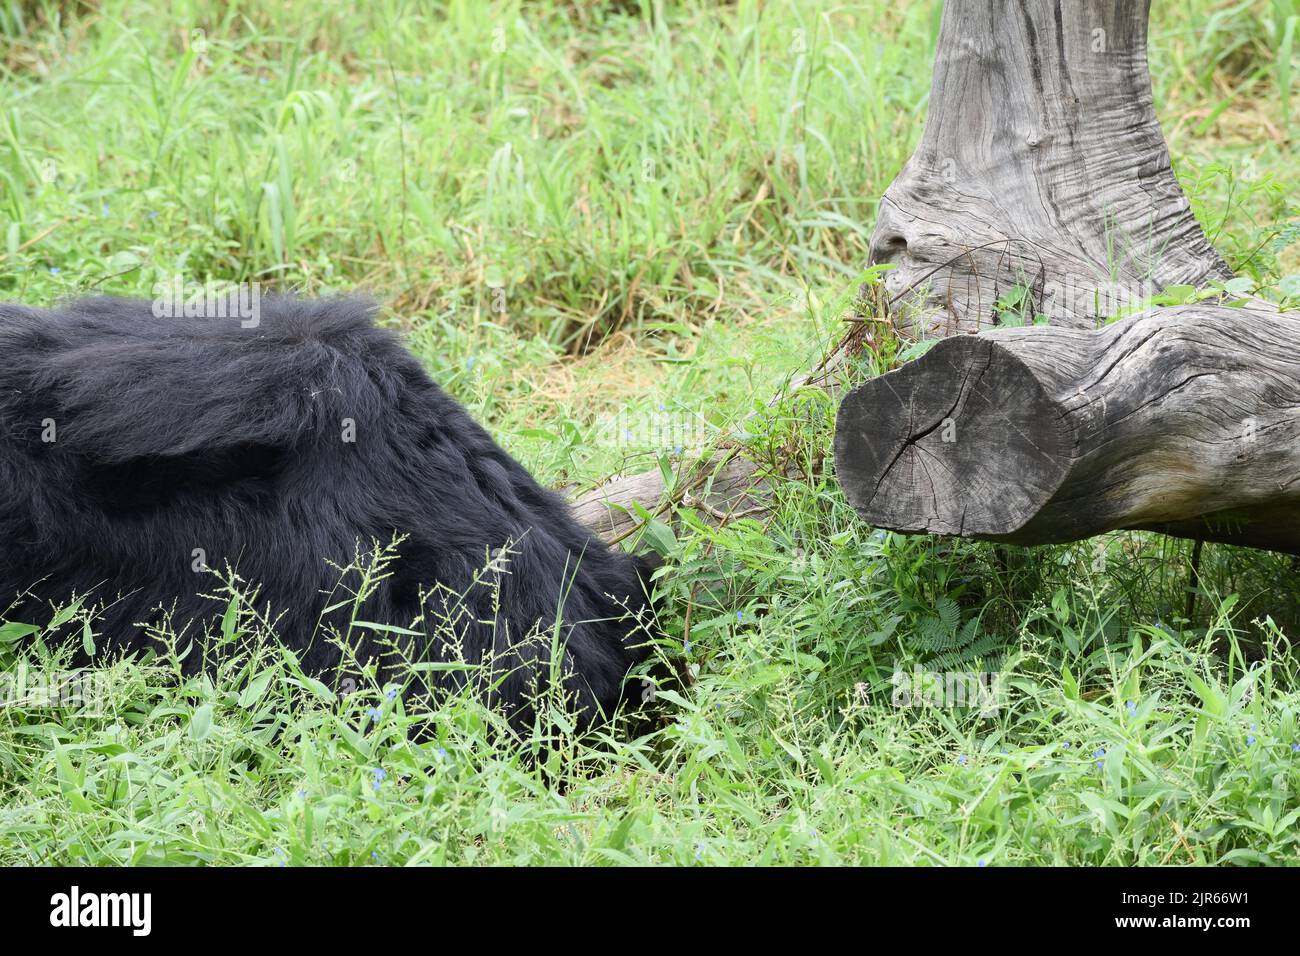 Der indische Bär ruht sich auf dem Grasfeld im Wildschutzgebiet aus. Stockfoto